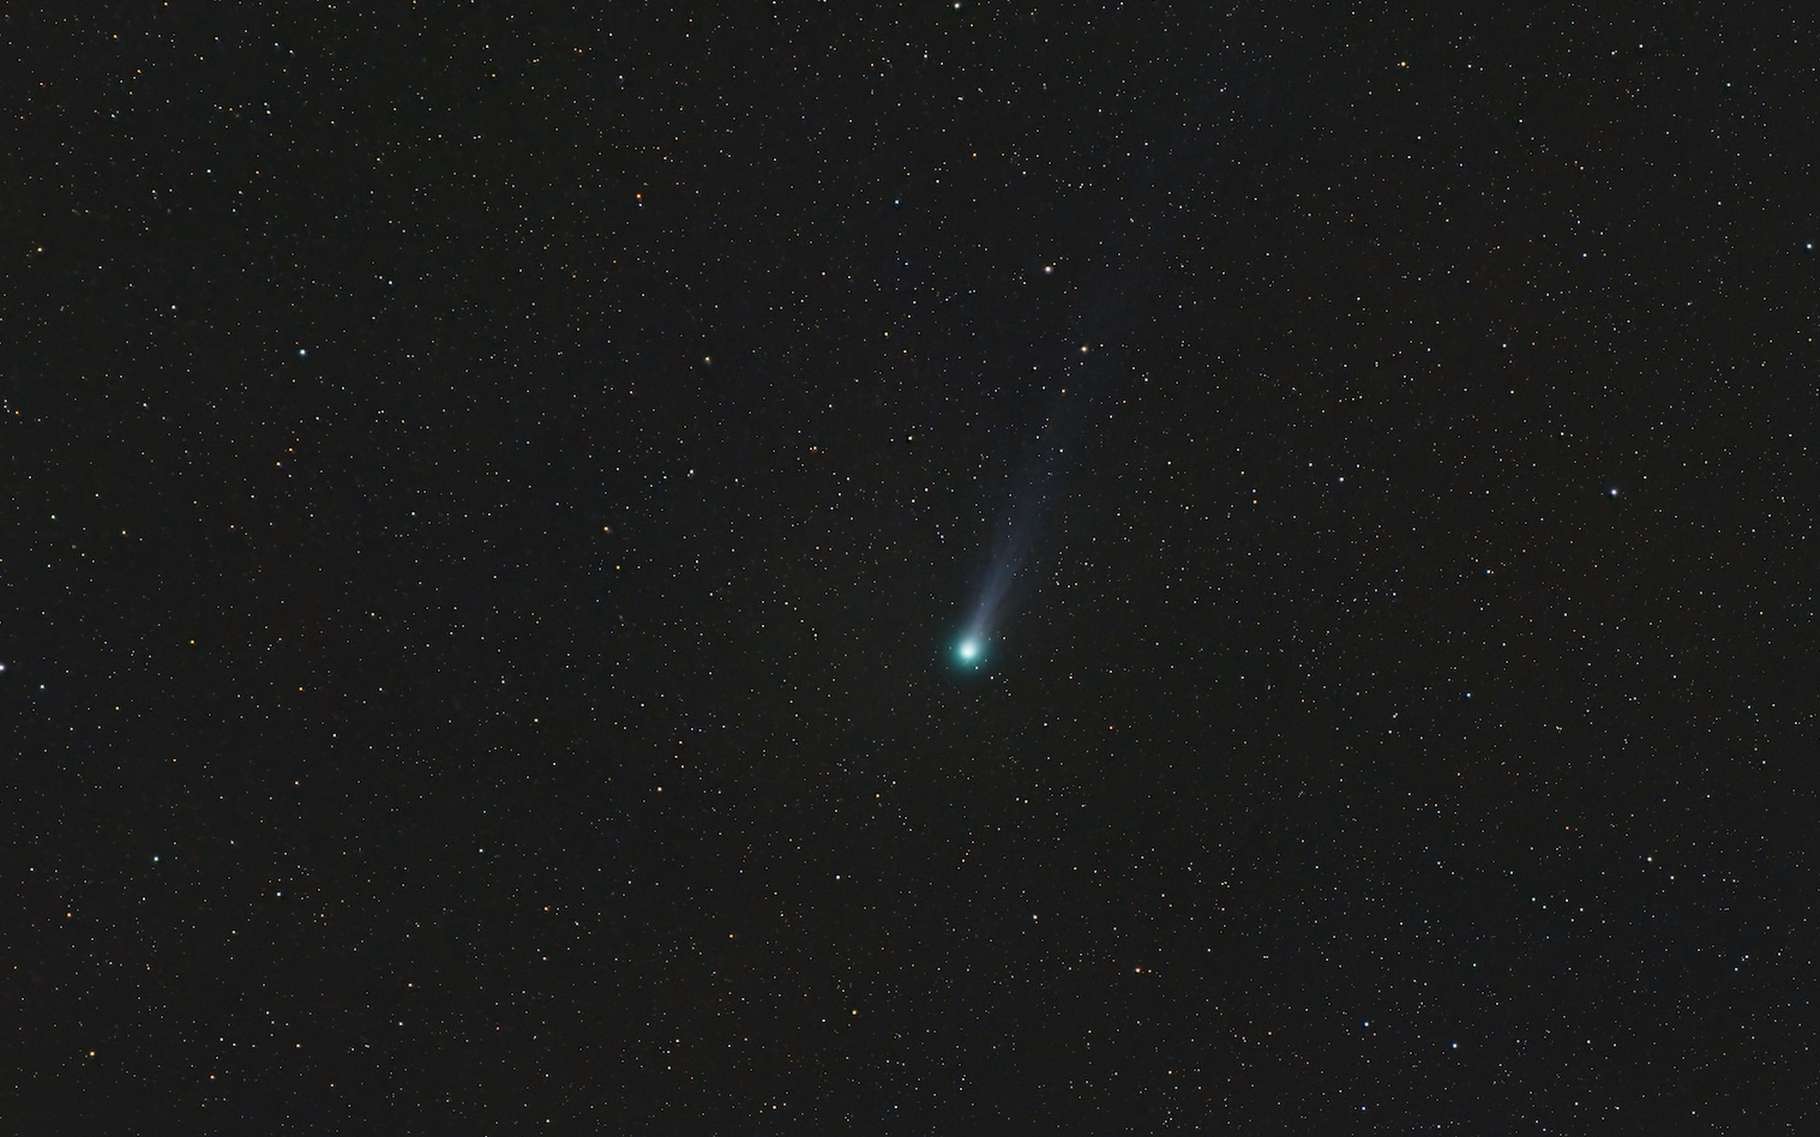 Cette comète pleine de surprises est visible le soir près de la grande galaxie d'Andromède